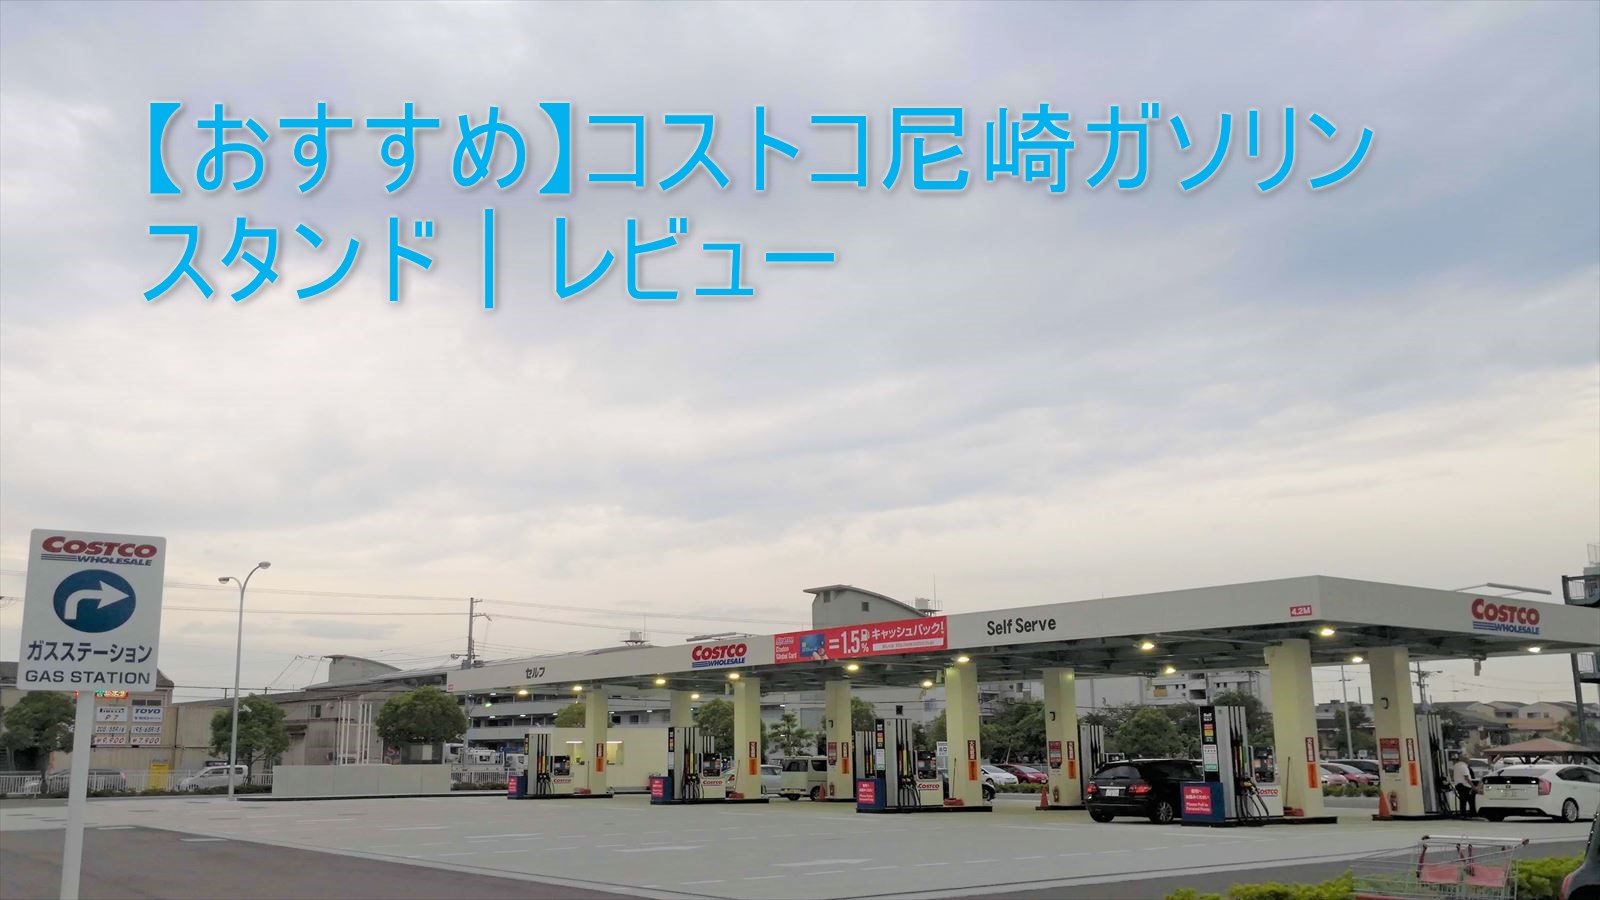 おすすめ コストコ尼崎ガソリンスタンド レビュー ジャンのブログニュース